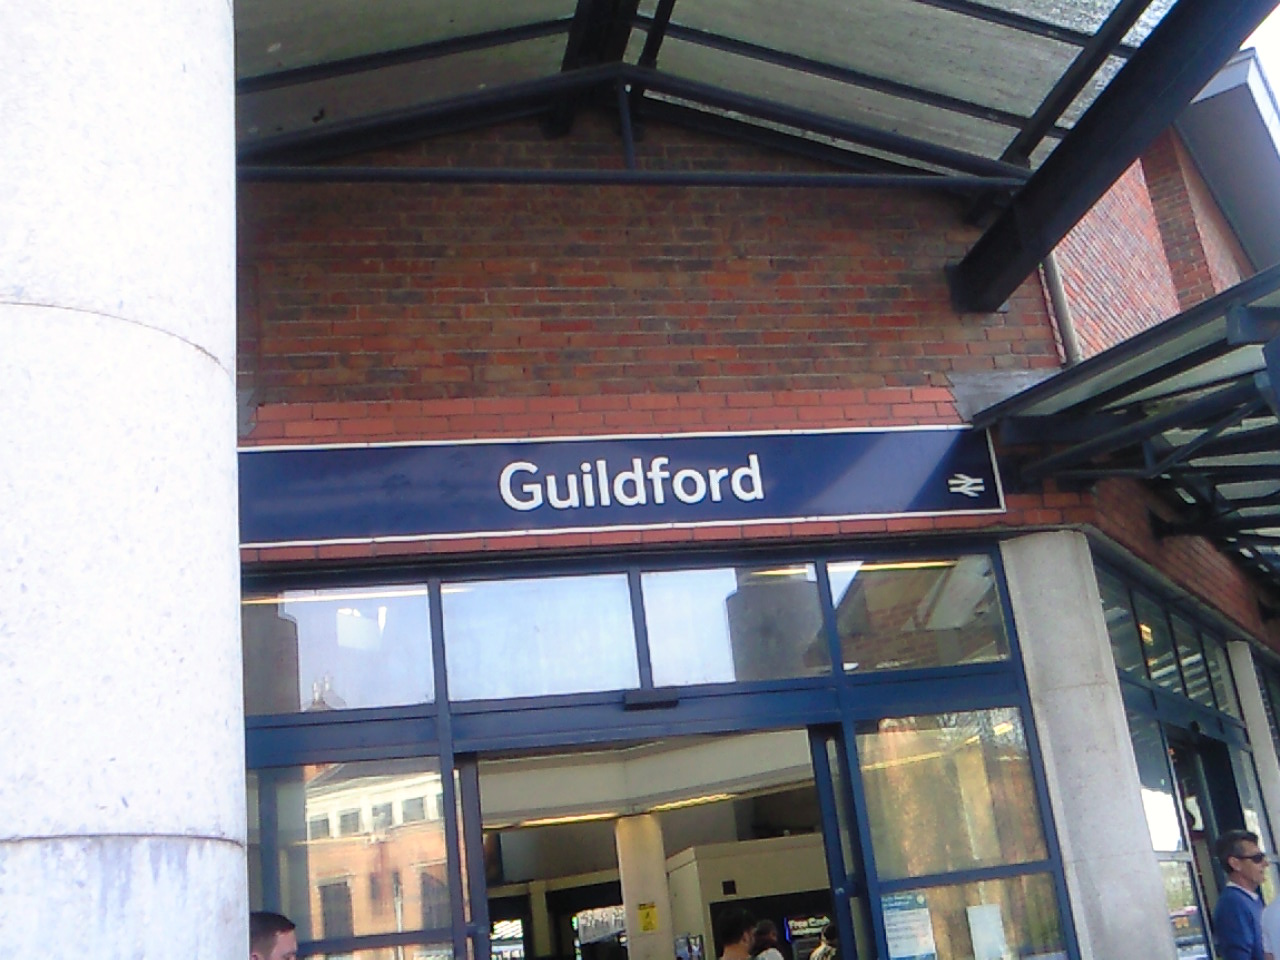 ﾛﾝﾄﾞﾝ南西ｷﾞﾙﾌｫｰﾄﾞ Guildford 訪問 帰途guildford駅 ﾛﾝﾄﾞﾝ Waterloo へ ﾛﾝﾄﾞﾝ 穴場 ﾀﾀﾞｶﾞｲﾄﾞ写真編 London Photo Guide Blog Nemi